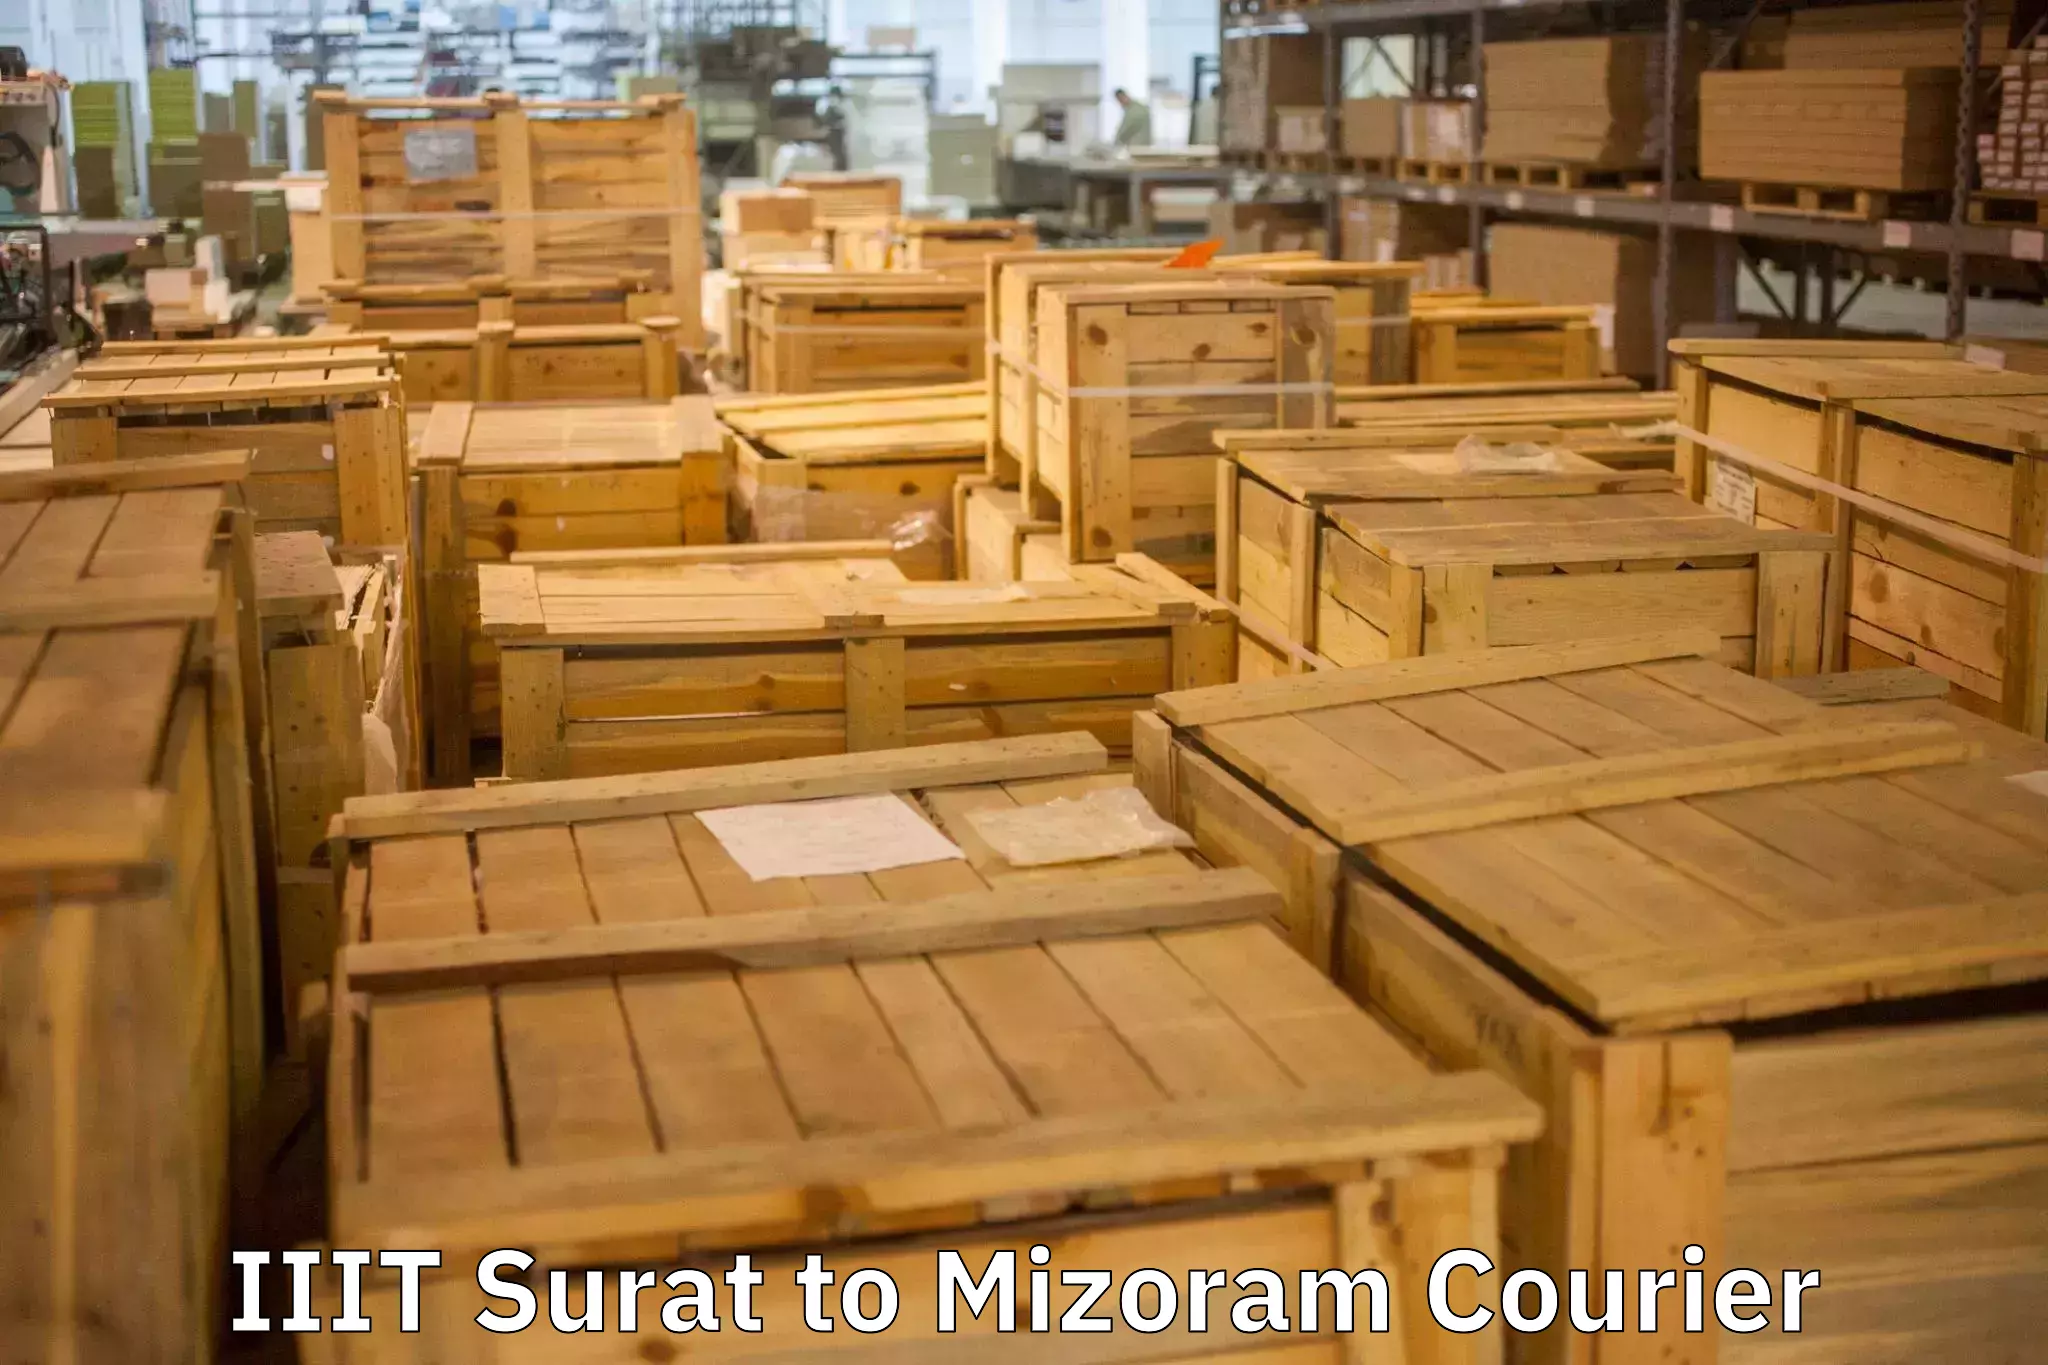 Budget-friendly movers IIIT Surat to Mizoram